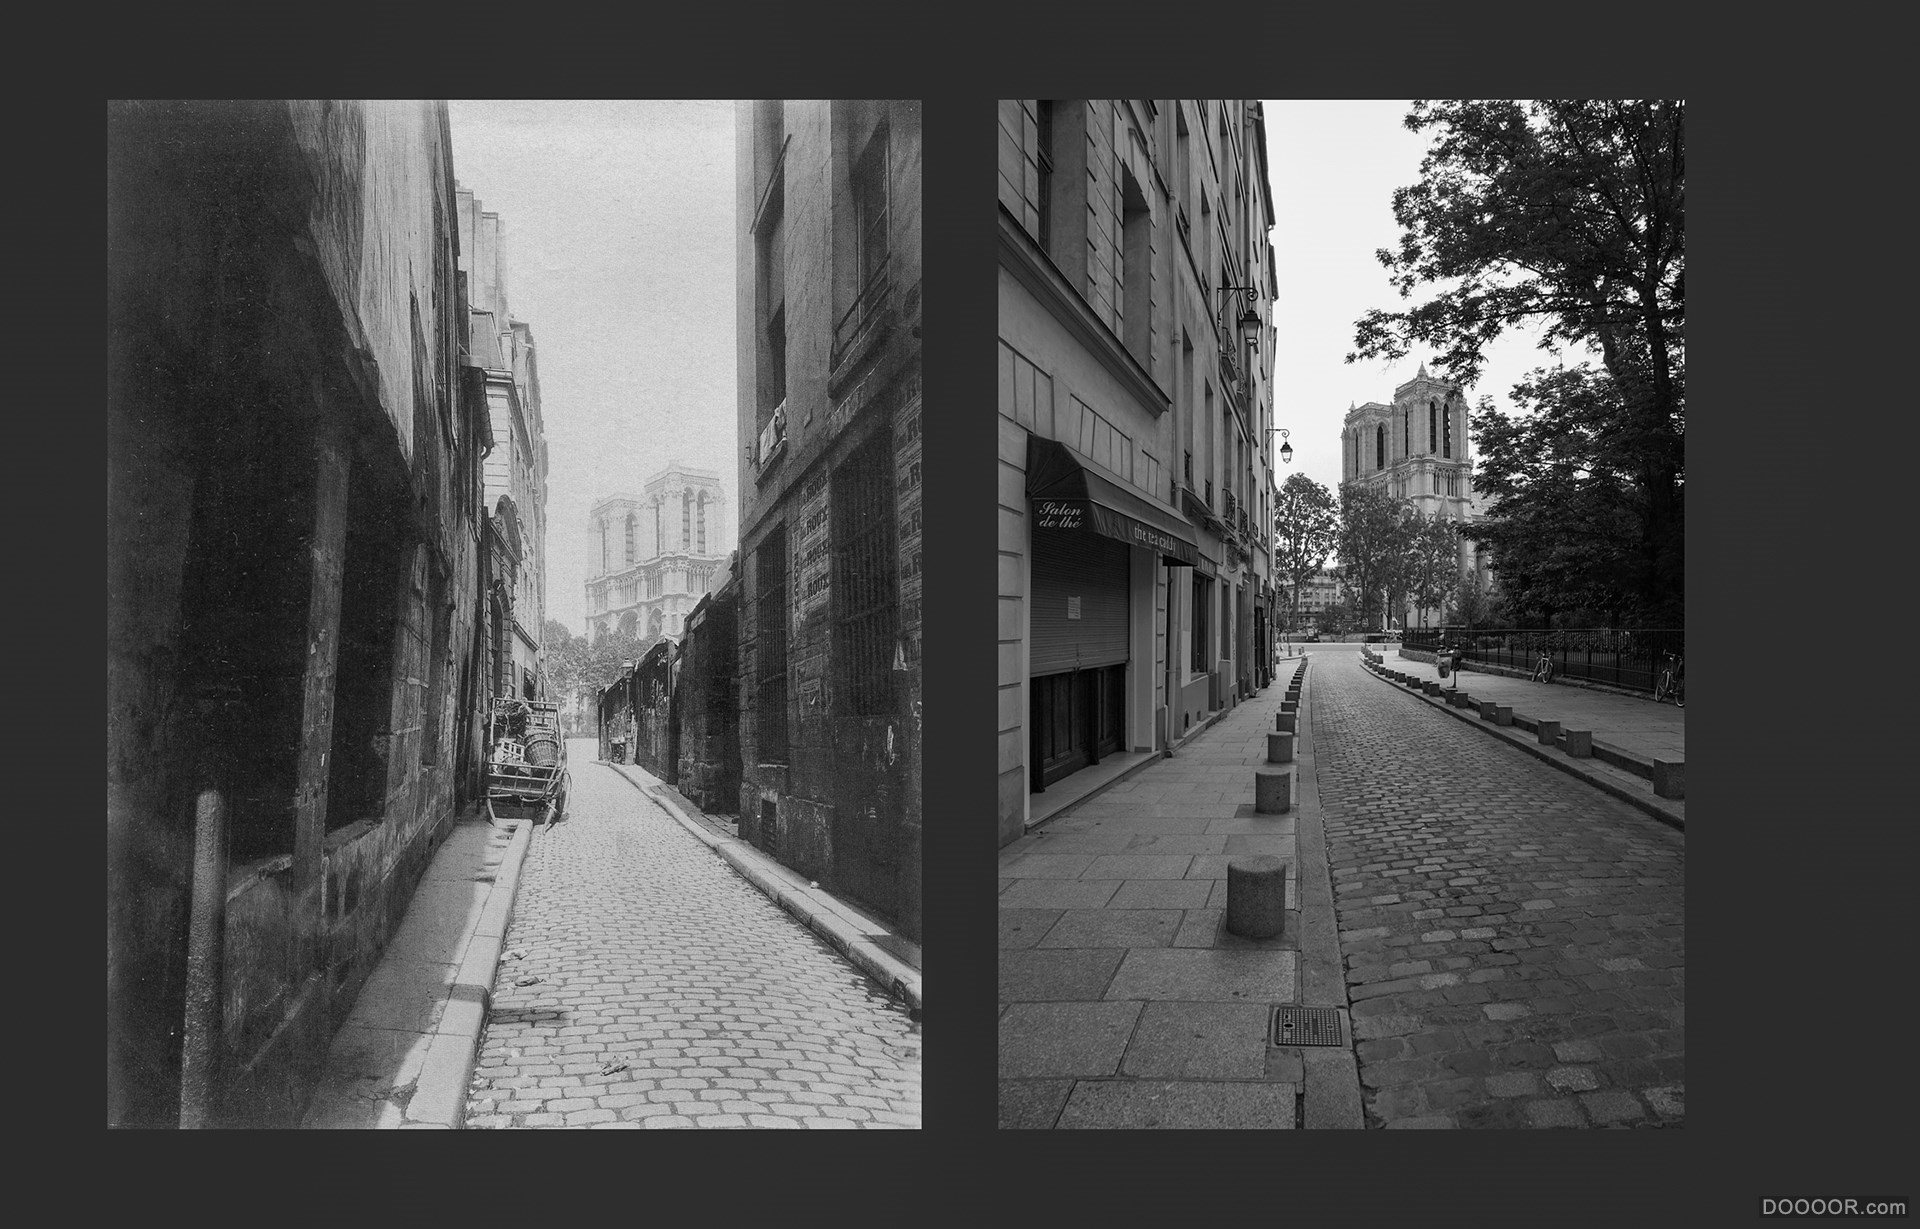 过去与现在-巴黎街头照片对比 [50P] (7).jpg